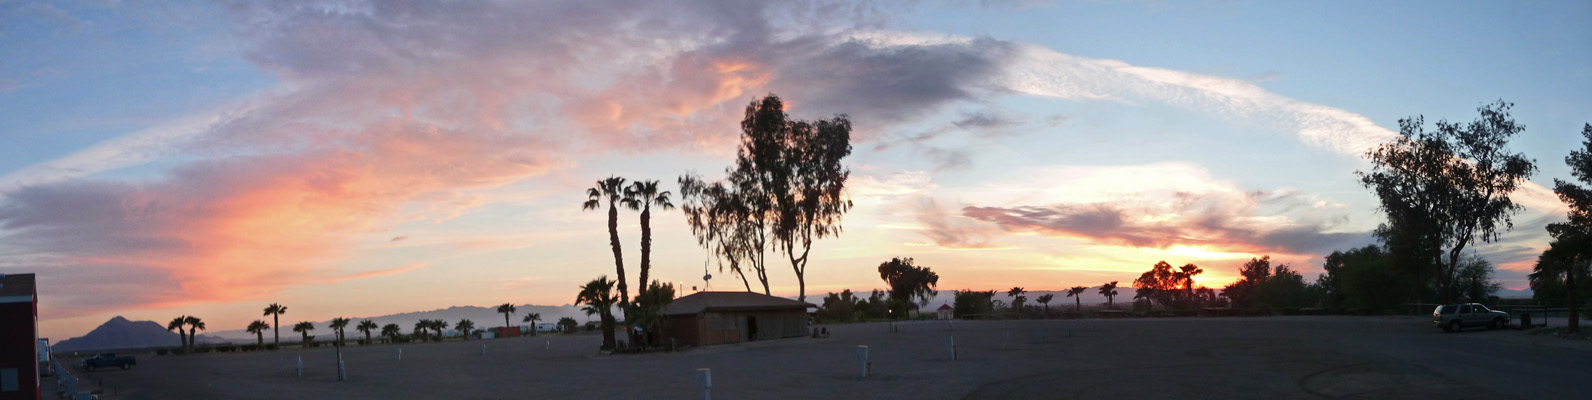 Sunset El Centro CA